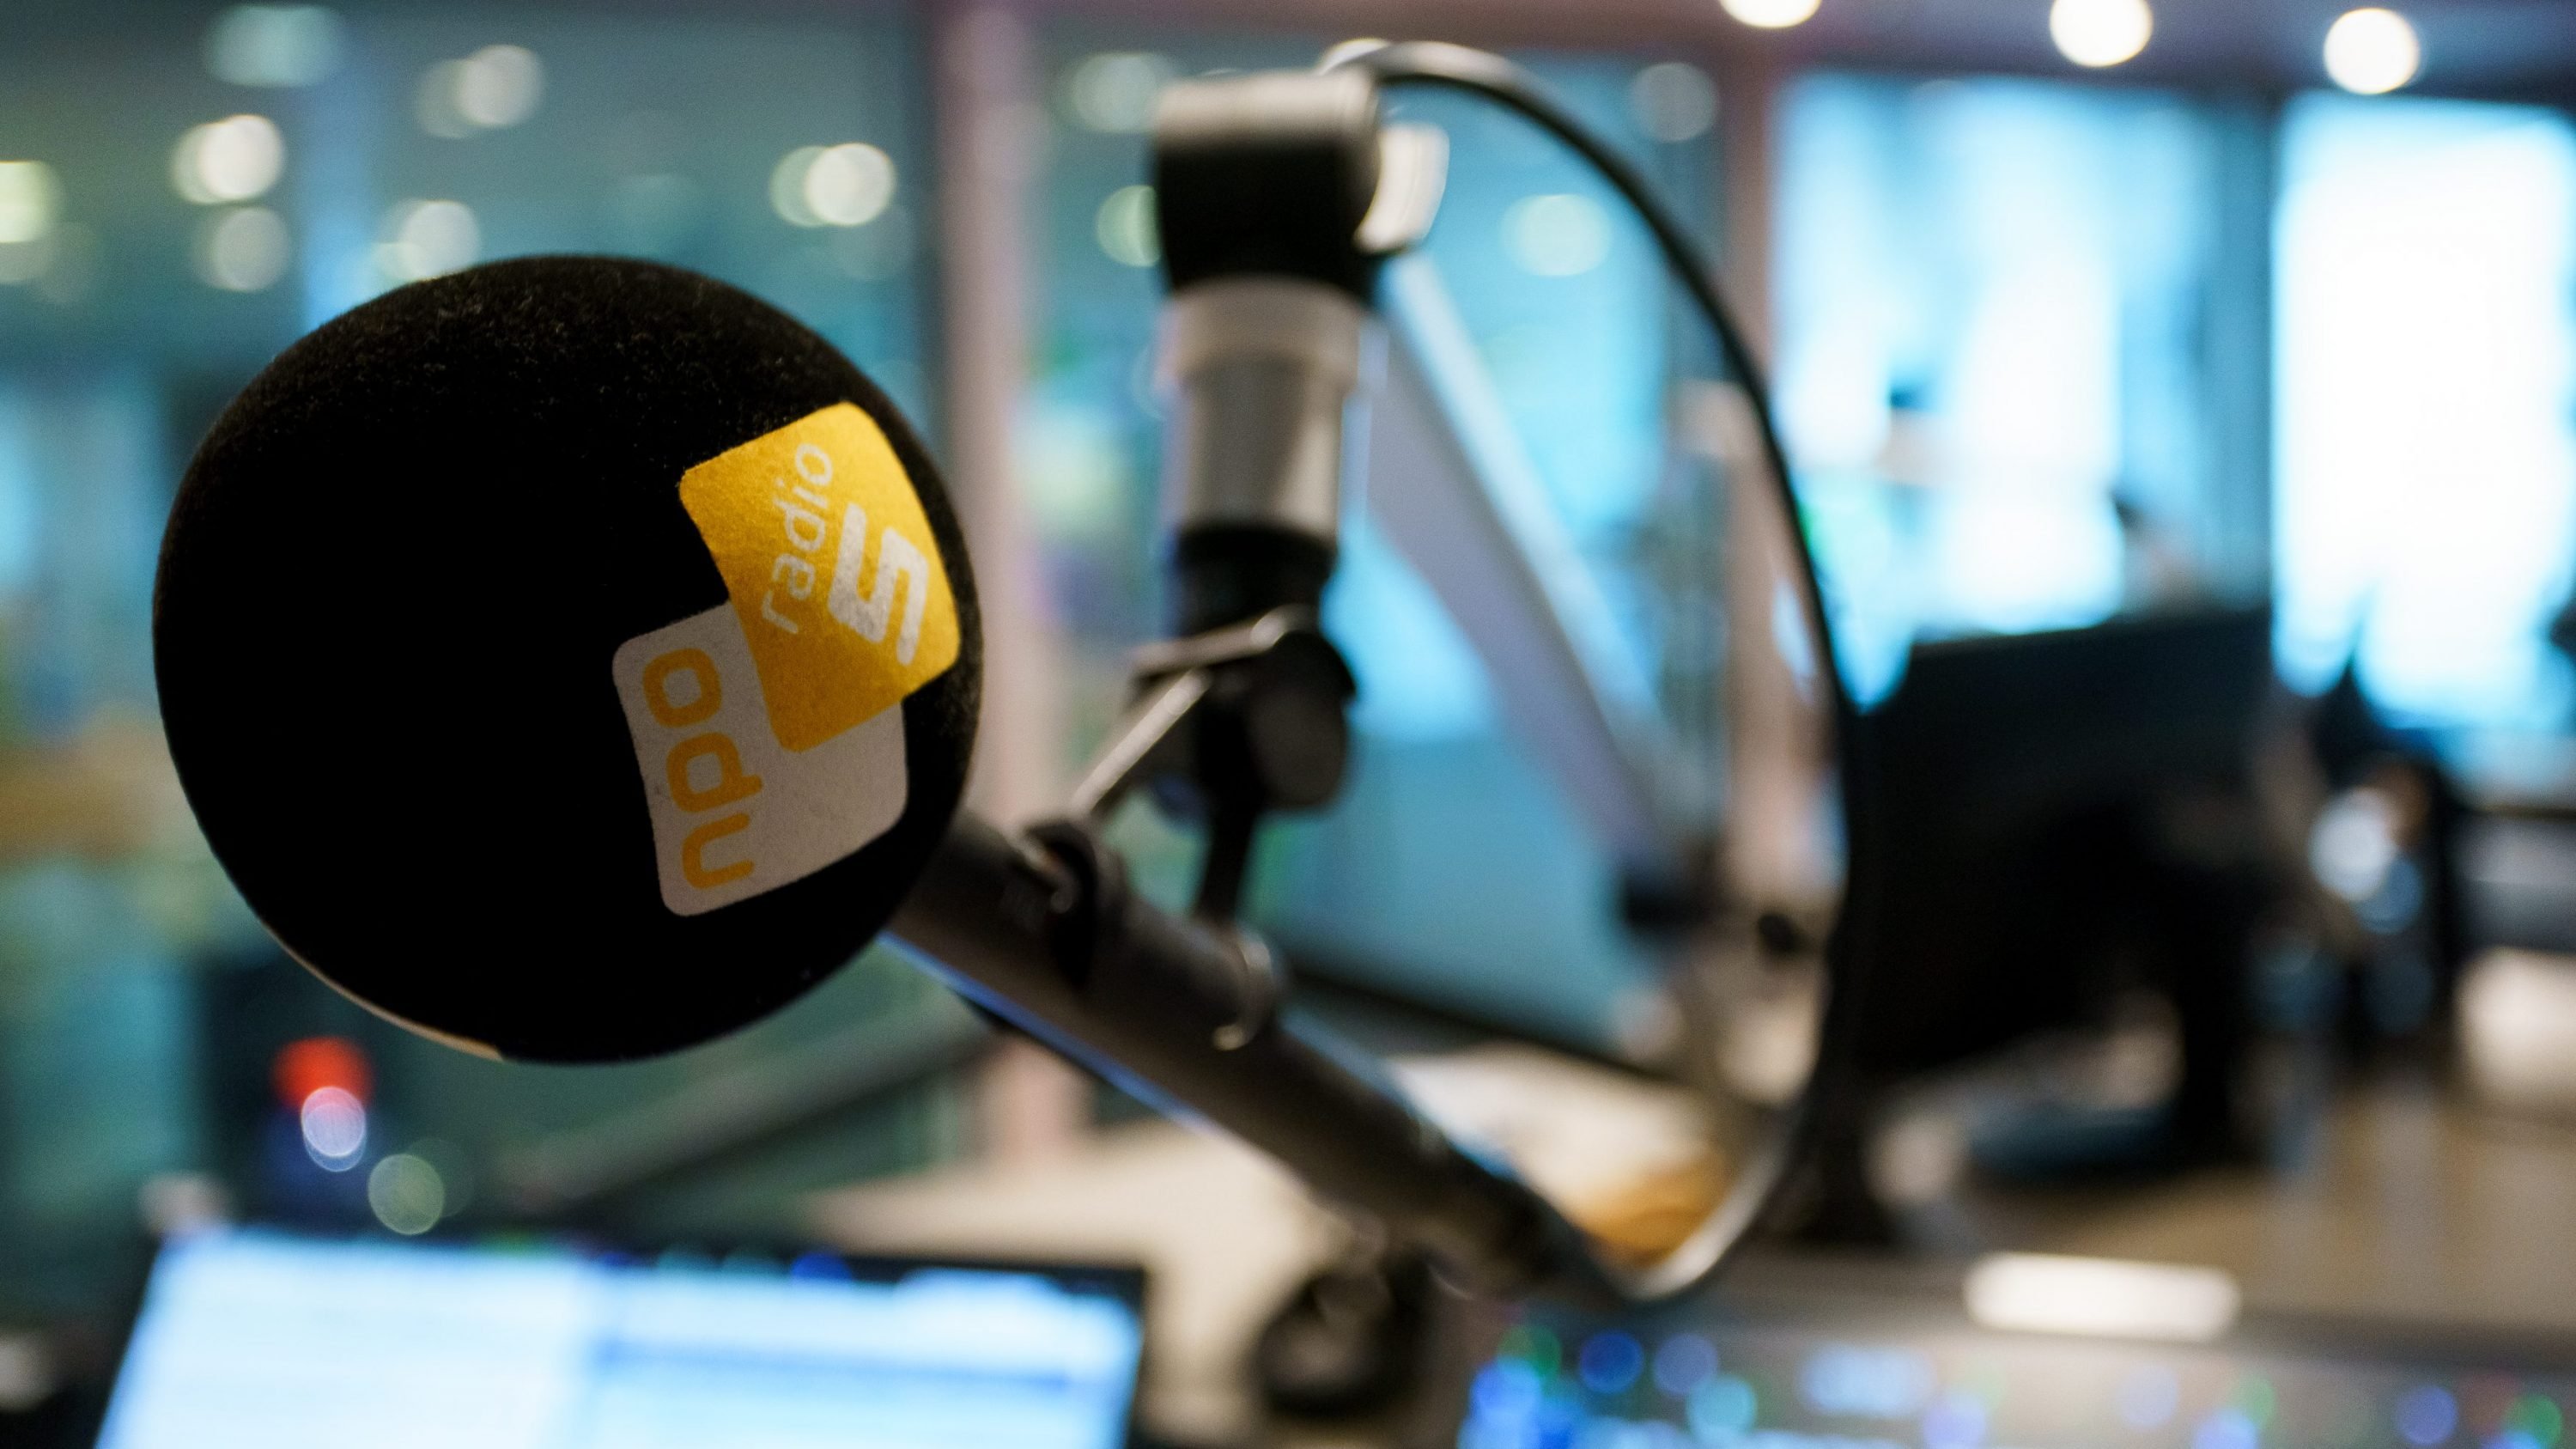 gewelddadig Ontslag nemen Turbulentie Radio 5 neemt volgende week nieuwe studio in gebruik - RadioFreak.nl